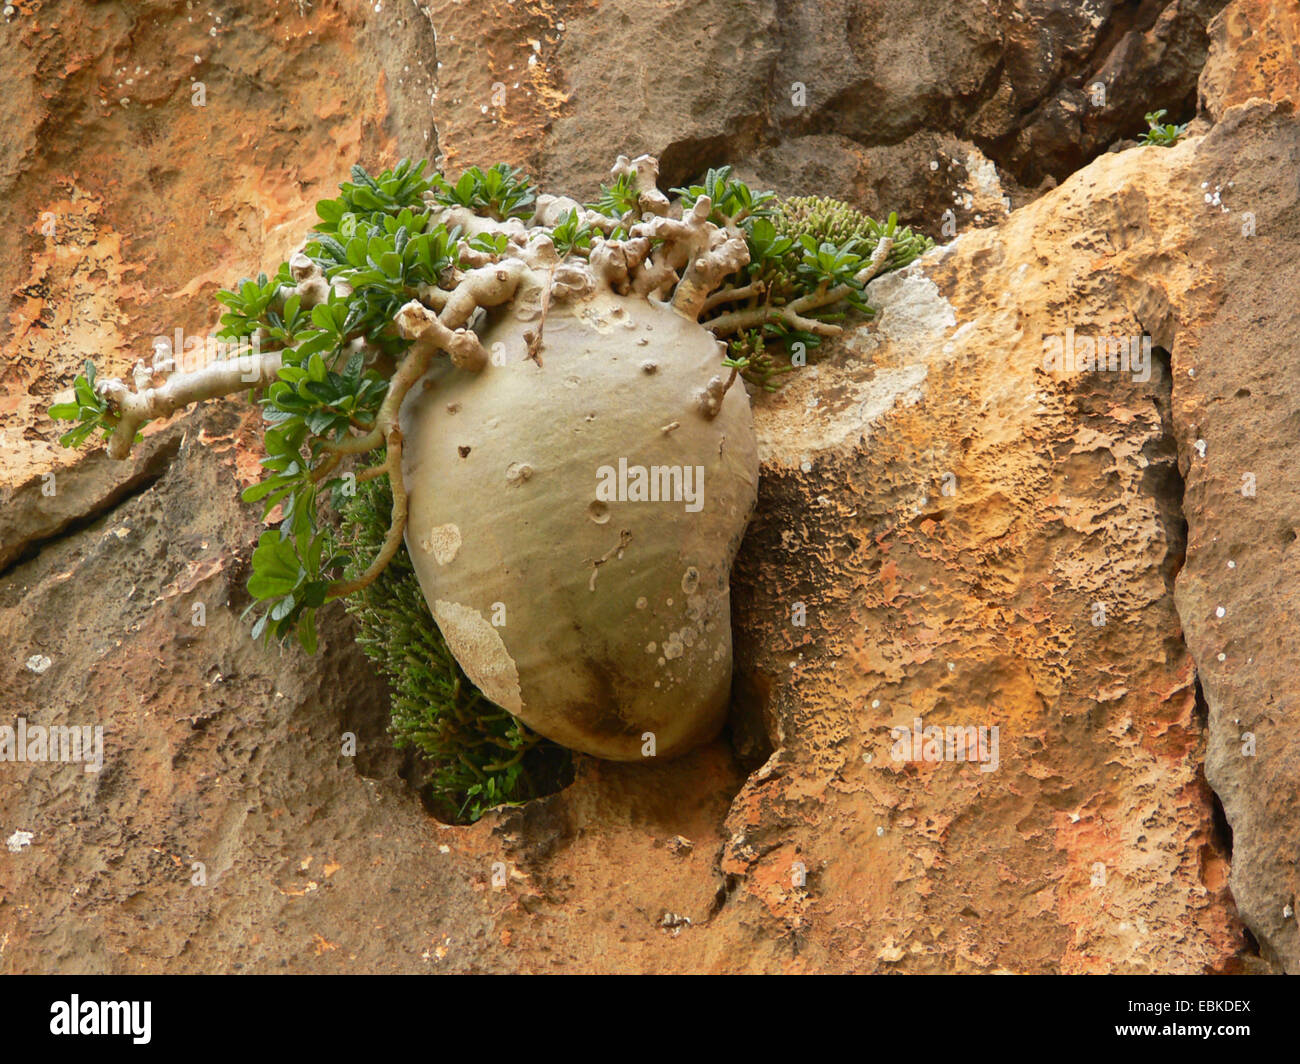 Dorstenia (Dorstenia gigas), individual at an rock wall, Yemen, Socotra Stock Photo